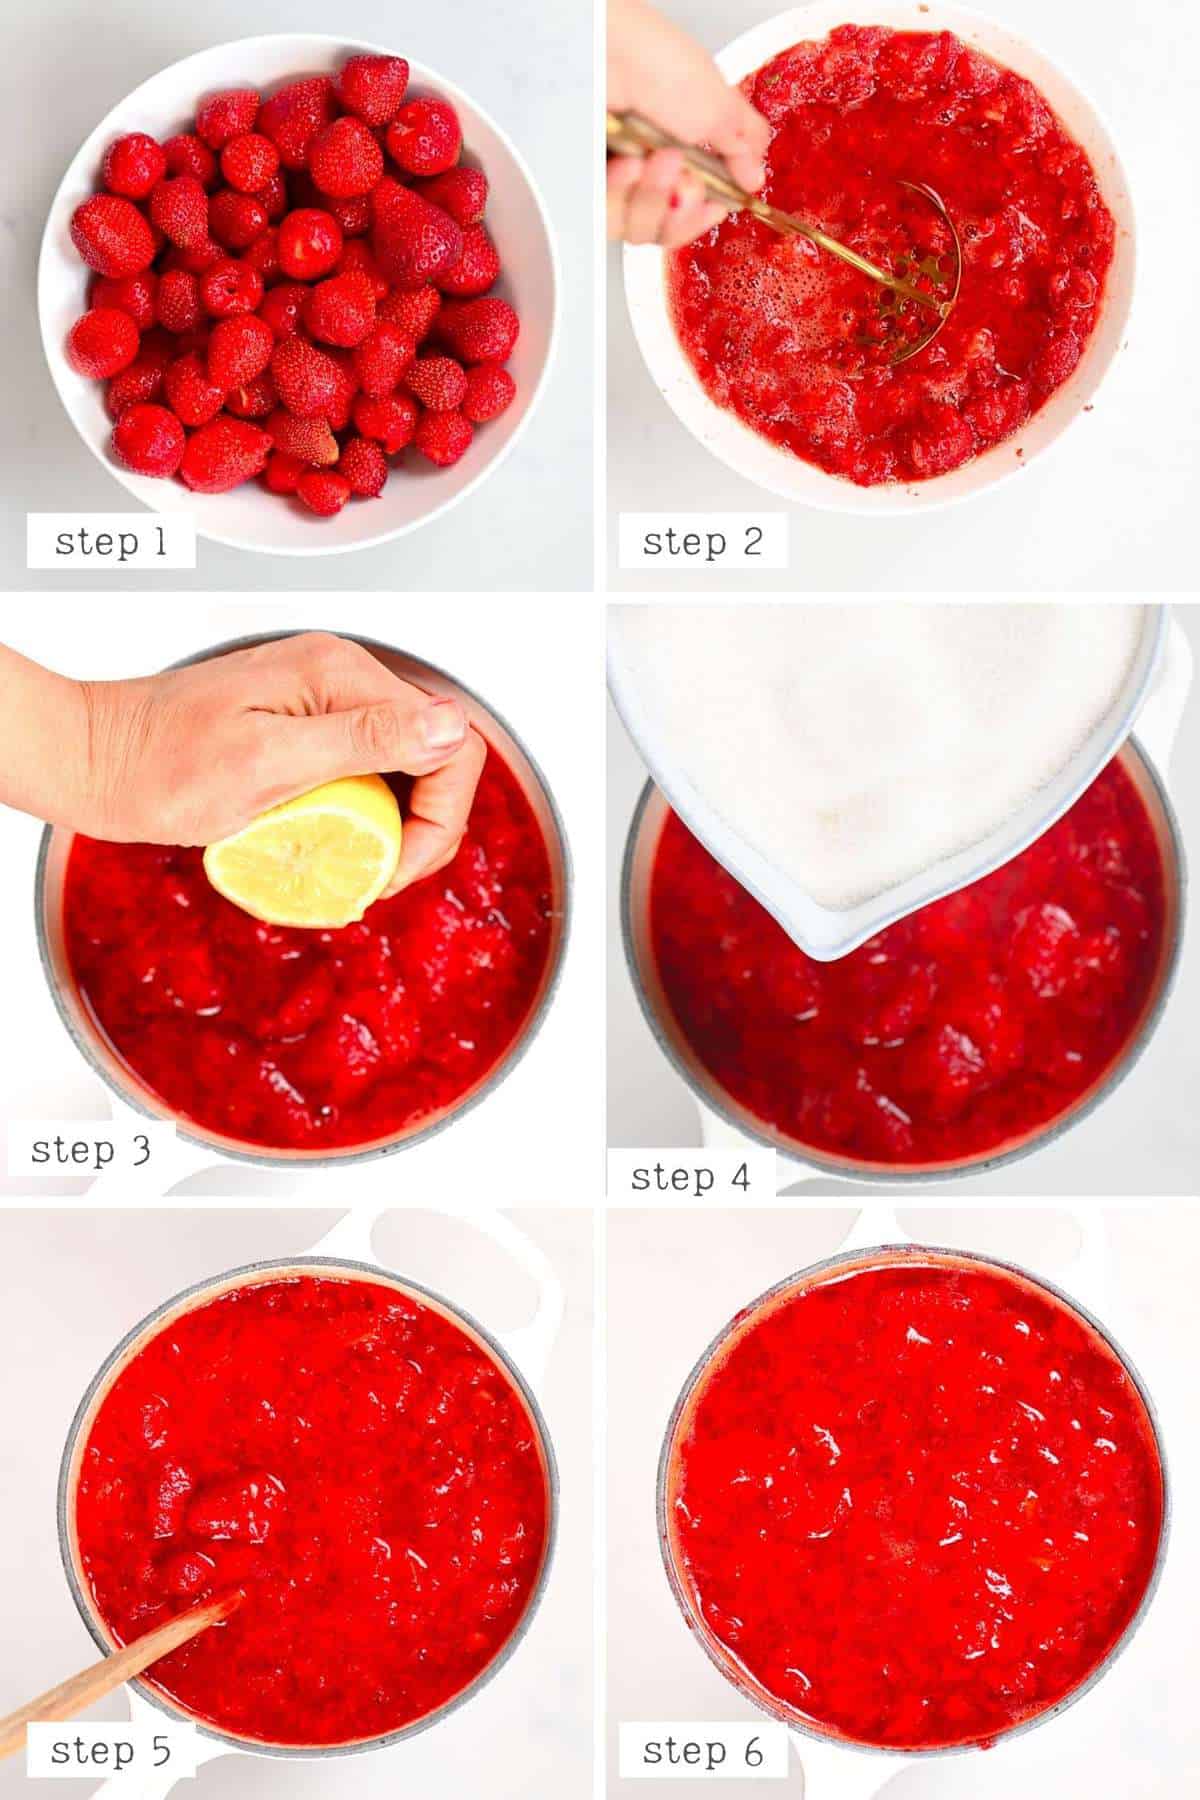 Steps for making Strawberry Jam